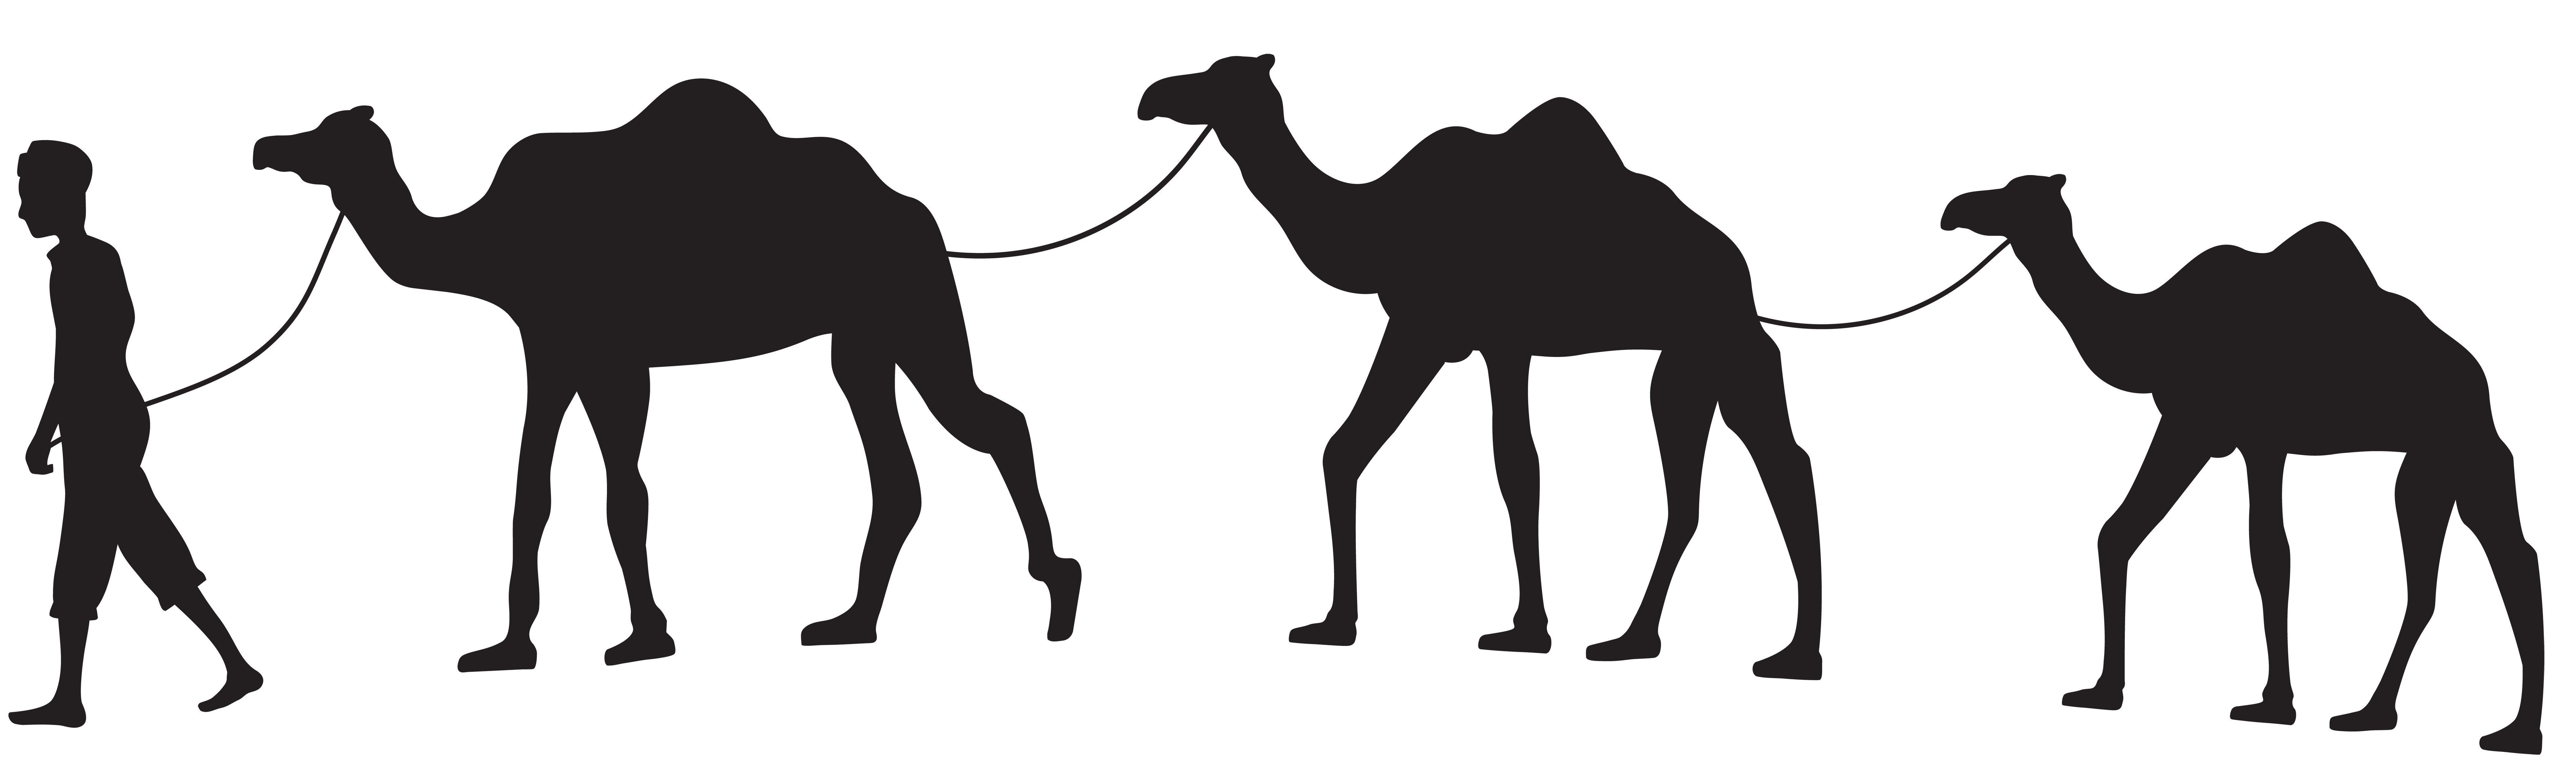 Camel Caravan Silhouette PNG Clip Art